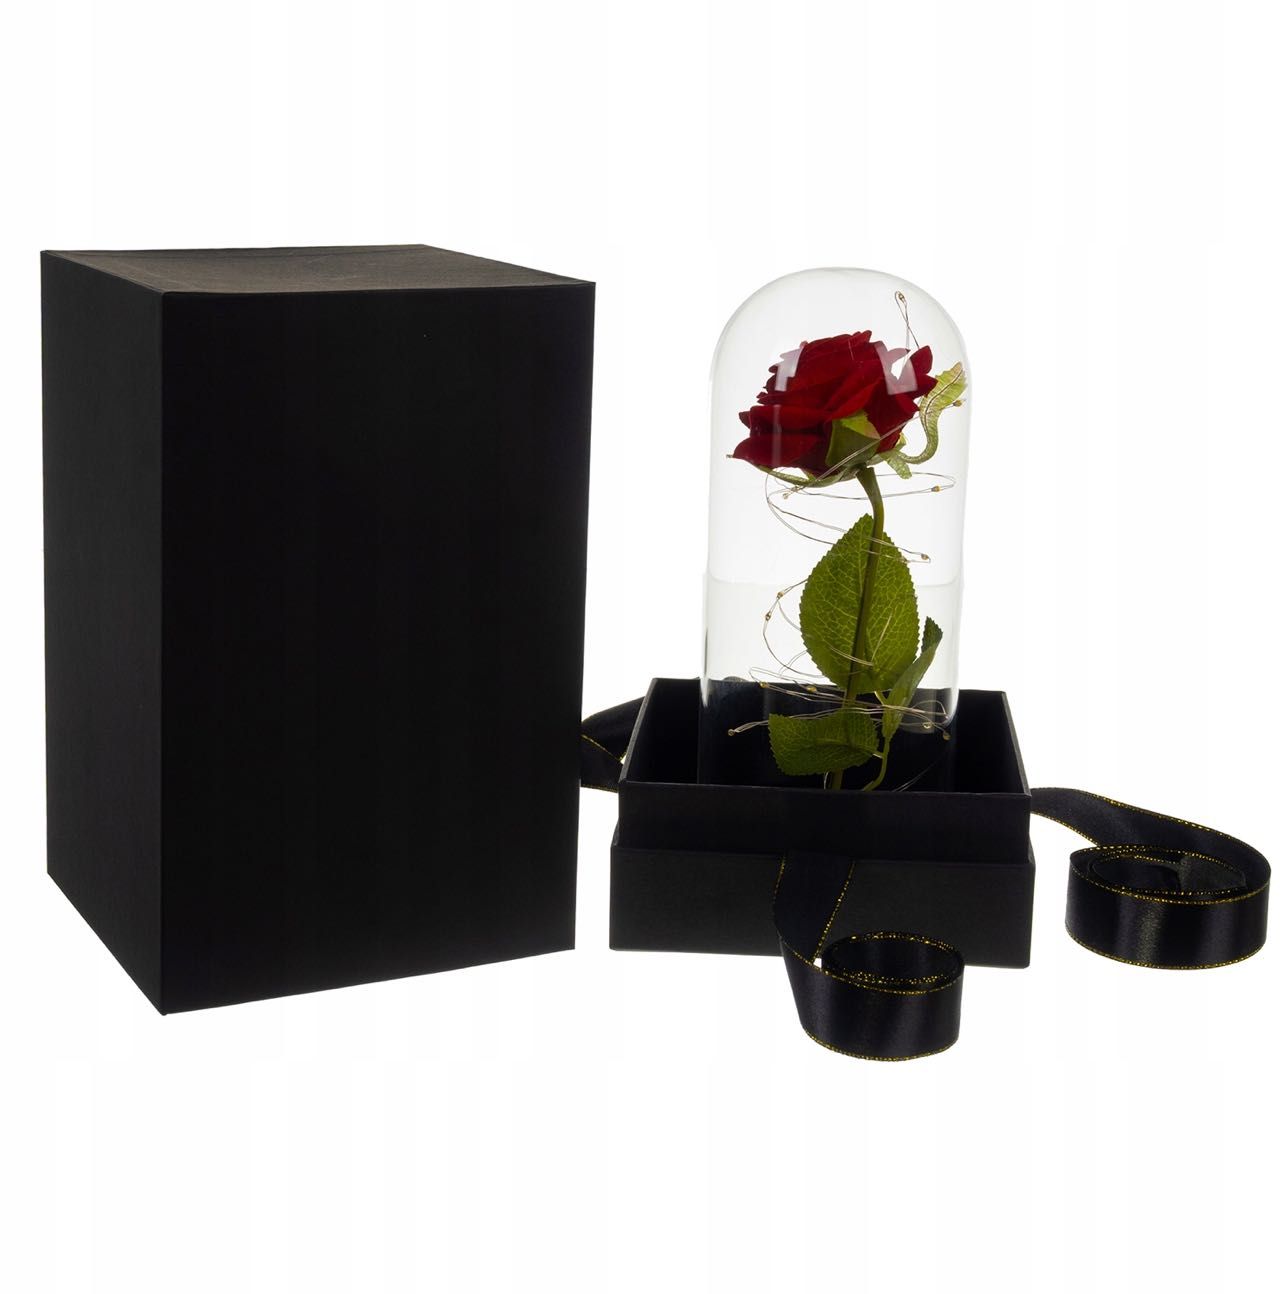 Róża Wieczna w Szkle Świecąca z LED w Pudełkiem Prezentowym Płatki Róż